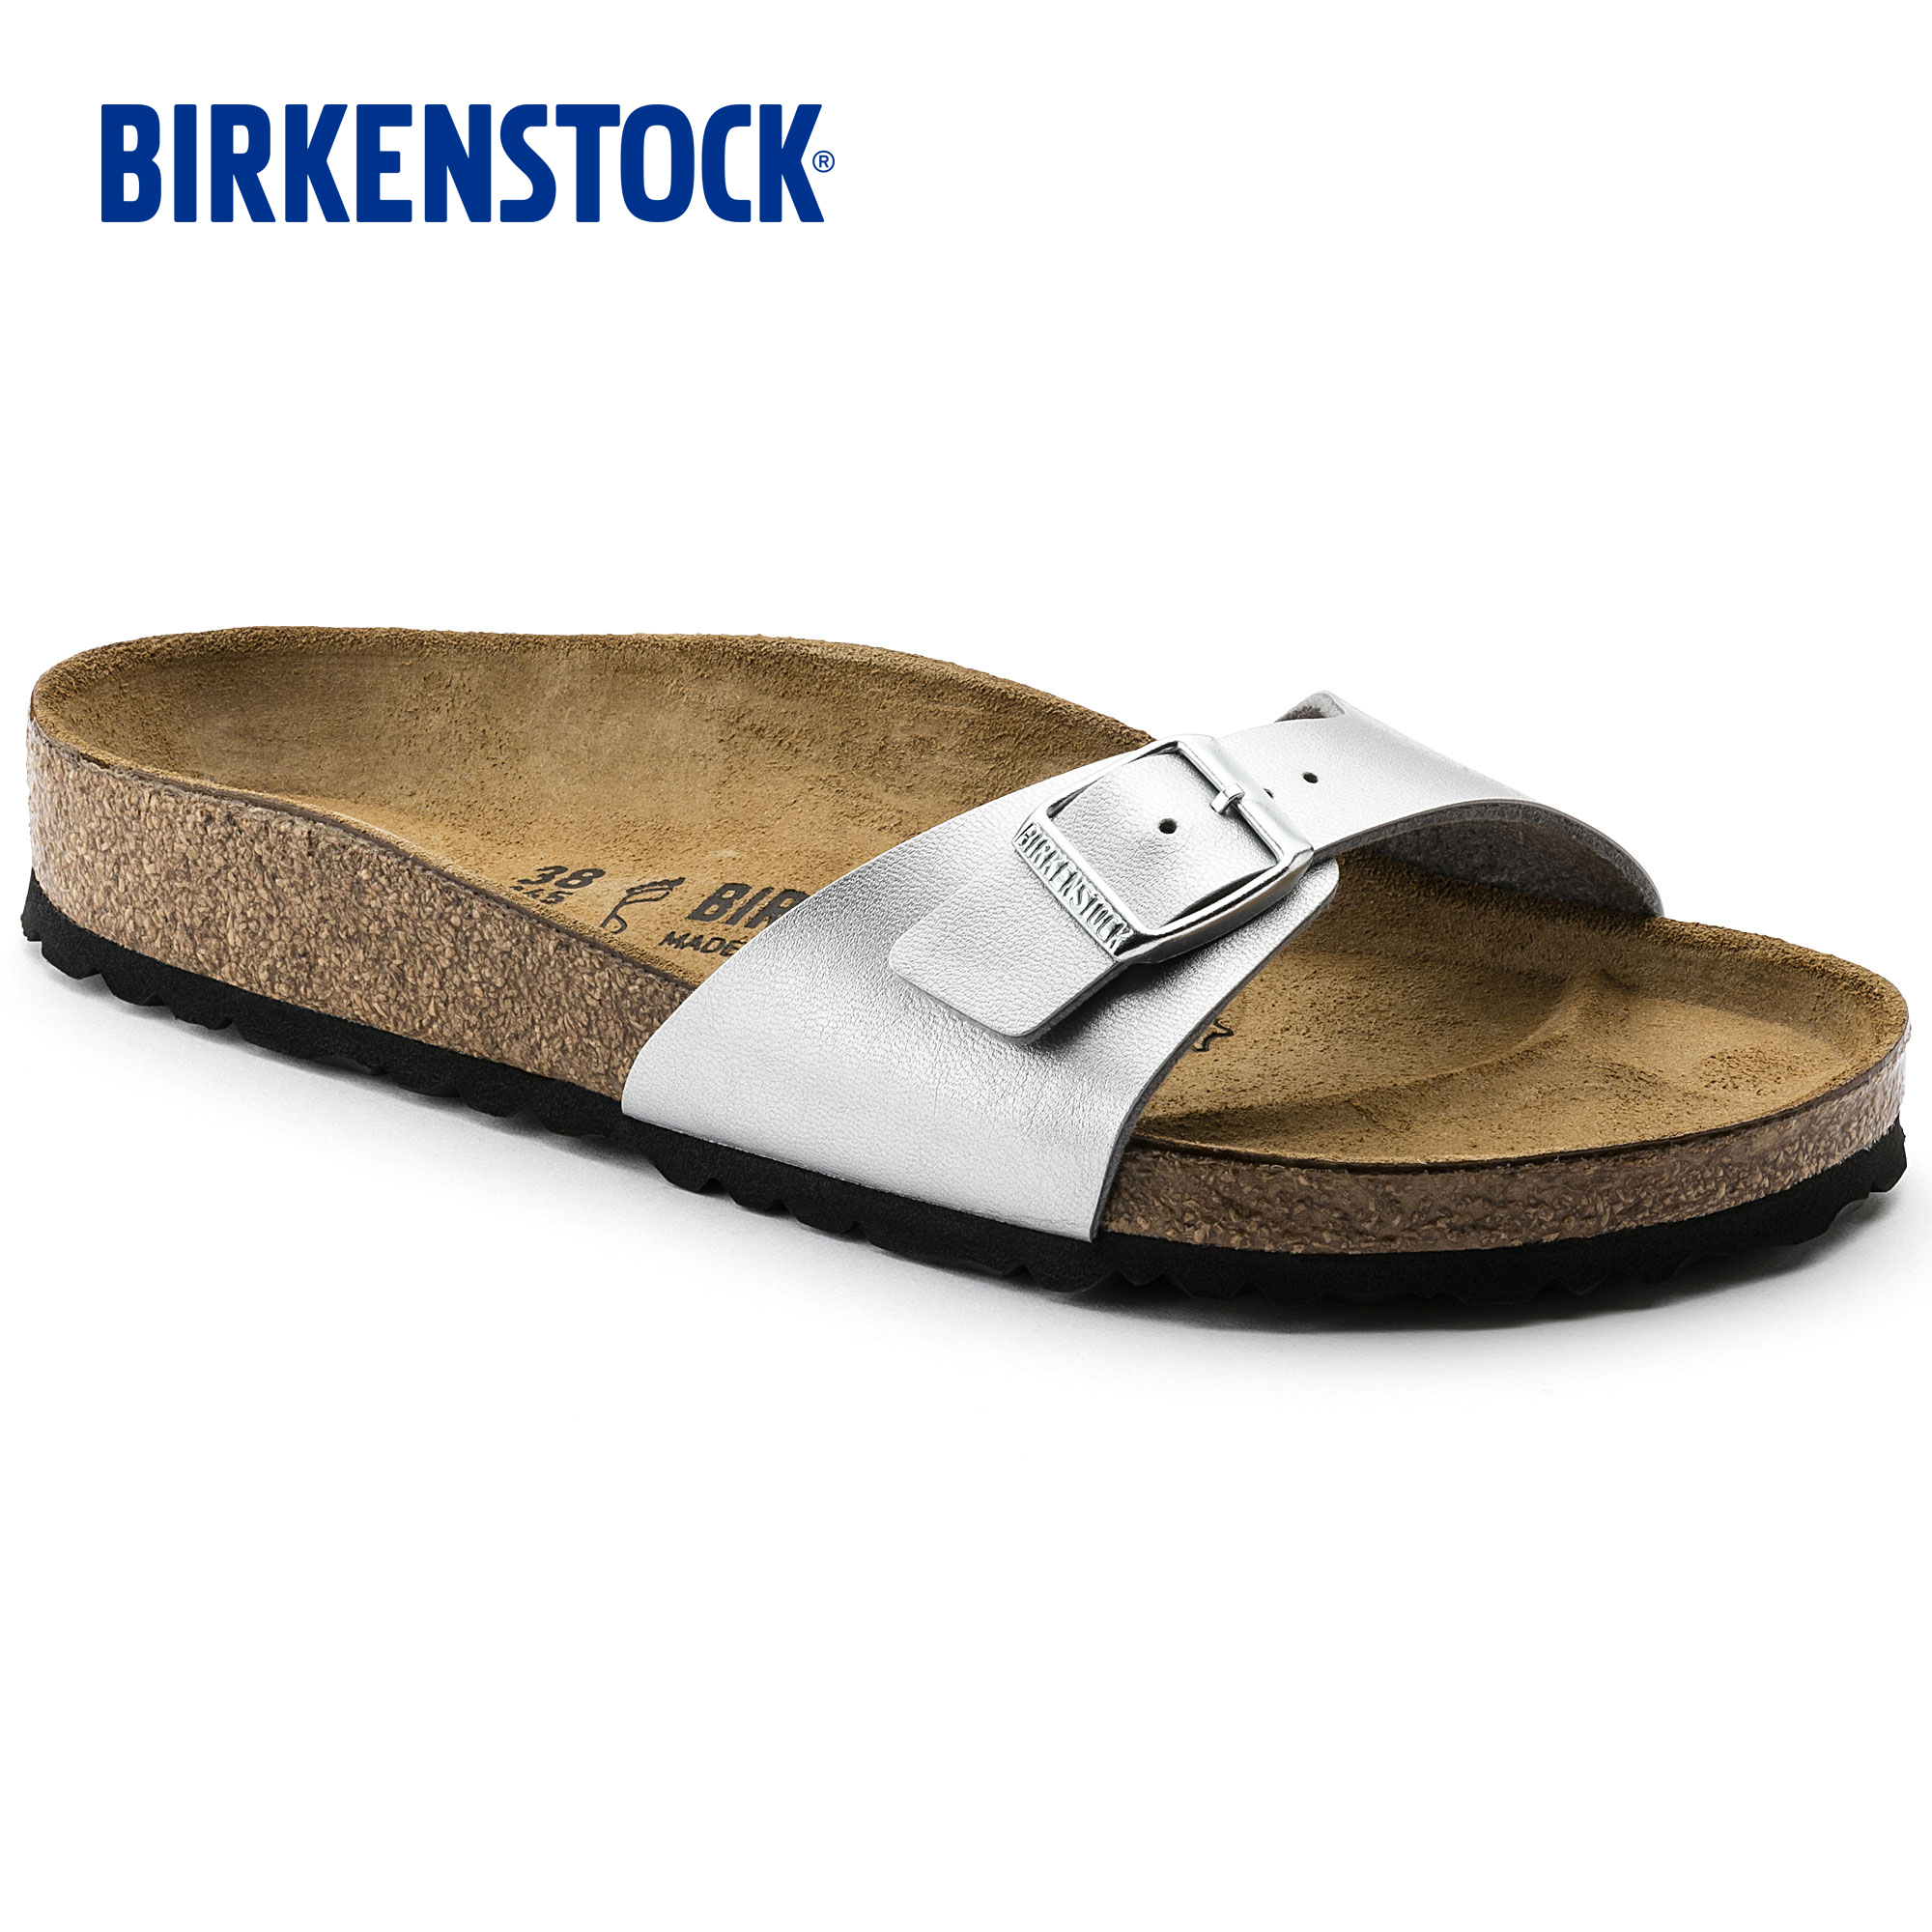 birkenstock women sale